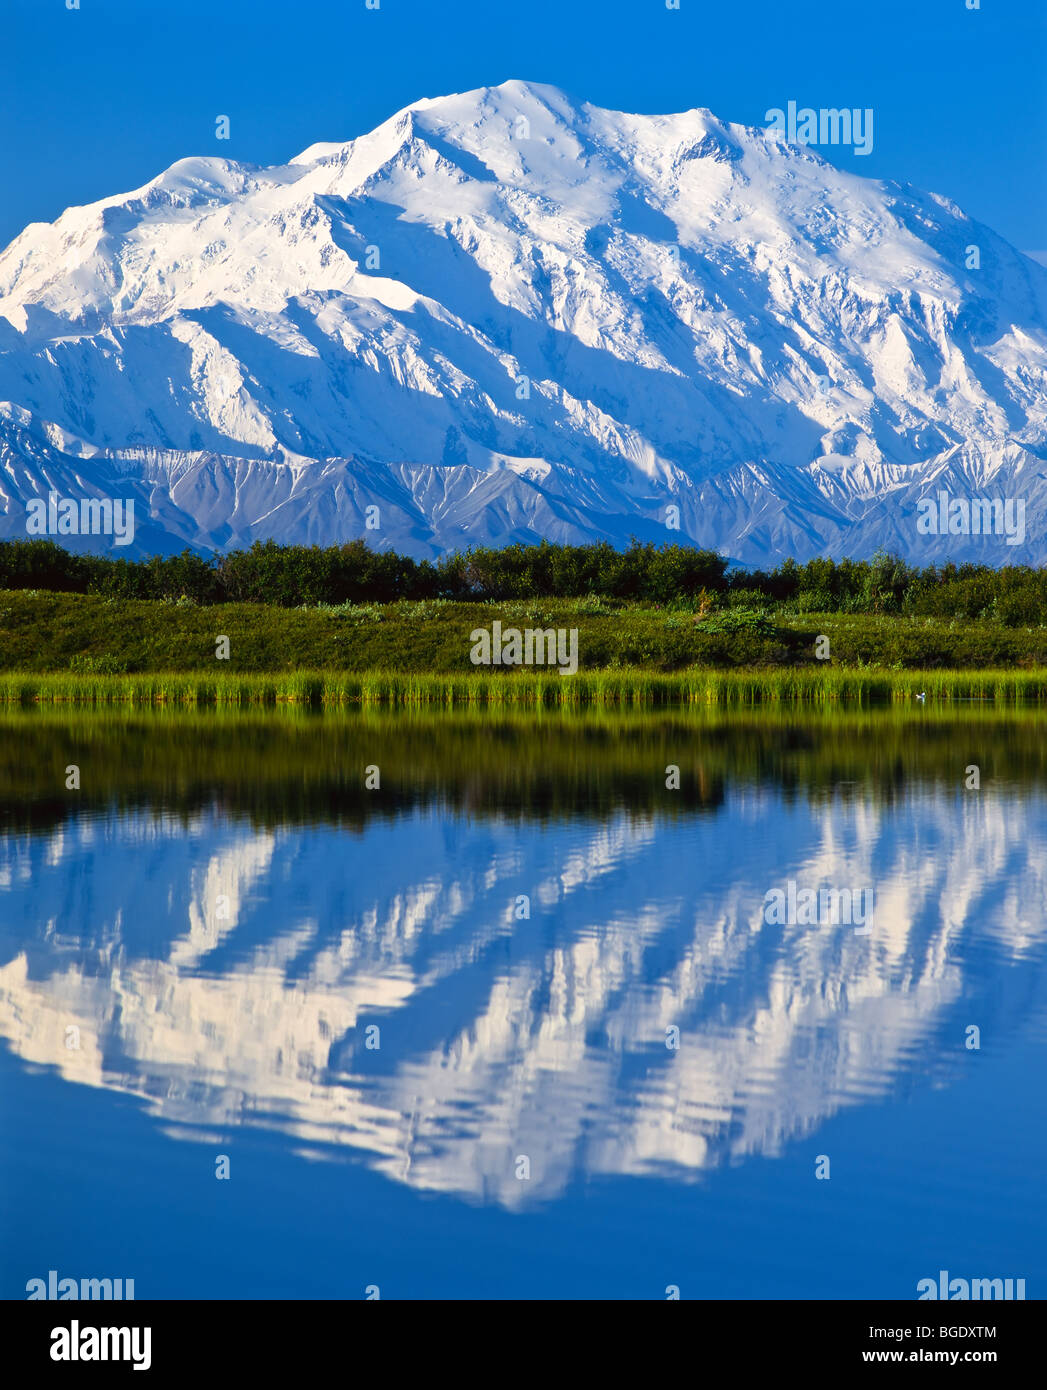 https://c8.alamy.com/compfr/bgdxtm/le-mont-mckinley-denali-mountain-dans-le-parc-national-denali-et-mirror-lake-au-premier-plan-bgdxtm.jpg